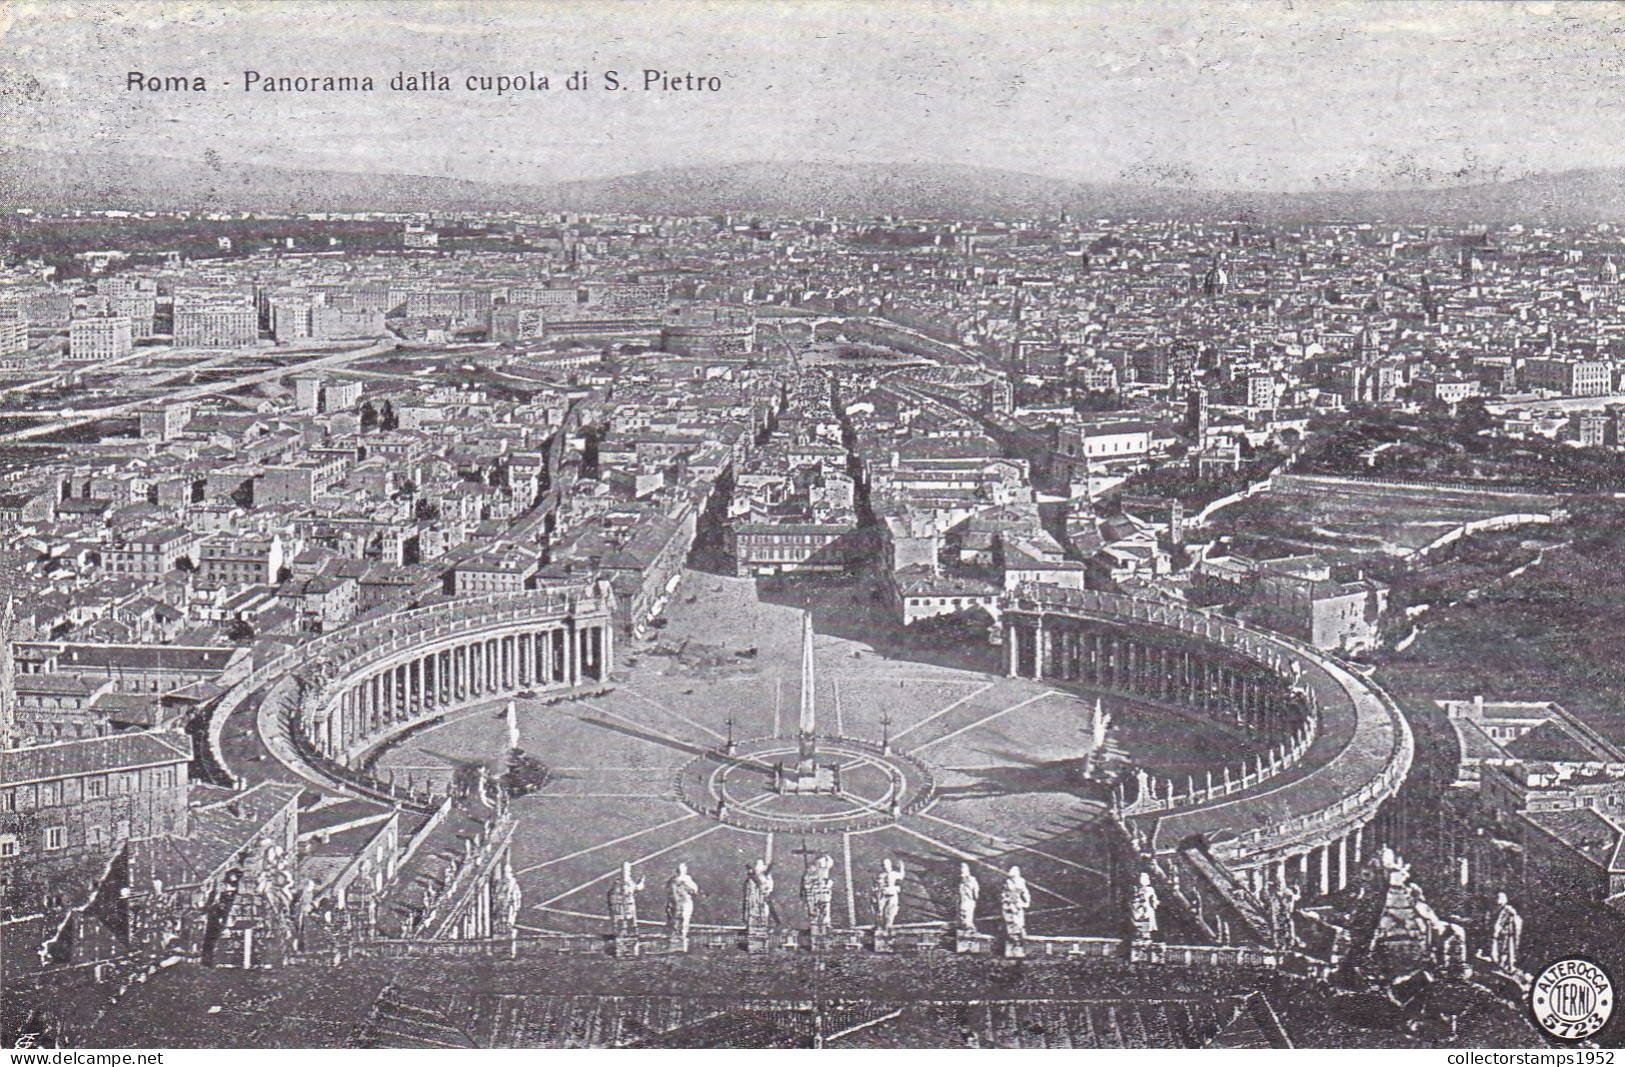 CPA  - PANORAMA DALLA CUPOLA DI S. PIETRO, TH ESQUARE, STATUES, BUILDINGS, ROME - ITALY - Viste Panoramiche, Panorama